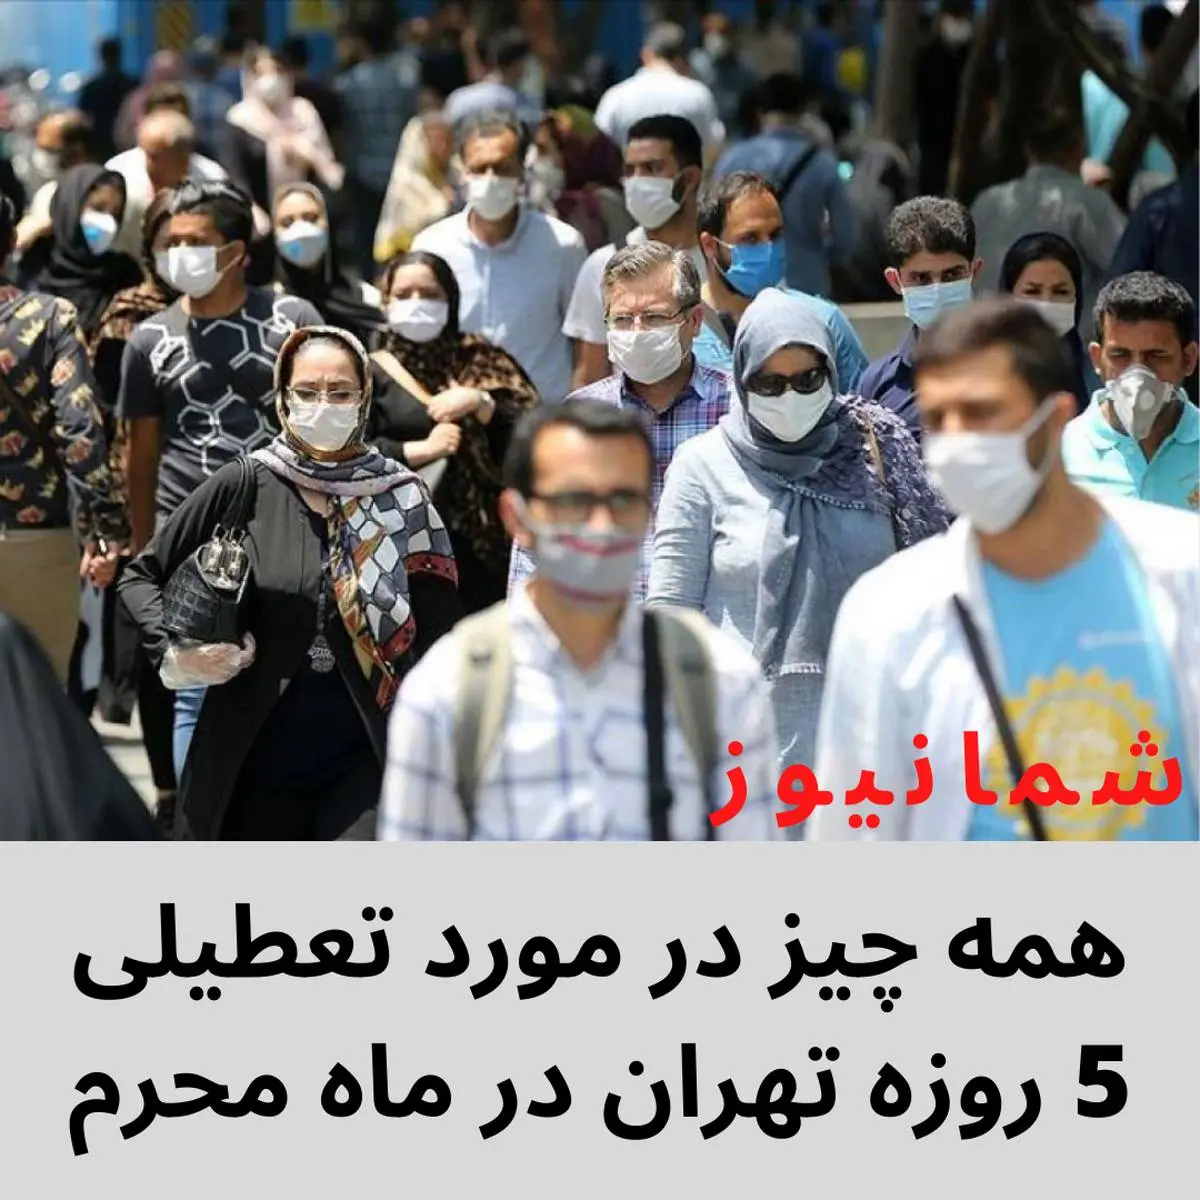 همه چیز در مورد تعطیلی 5 روزه تهران در ماه محرم + فیلم